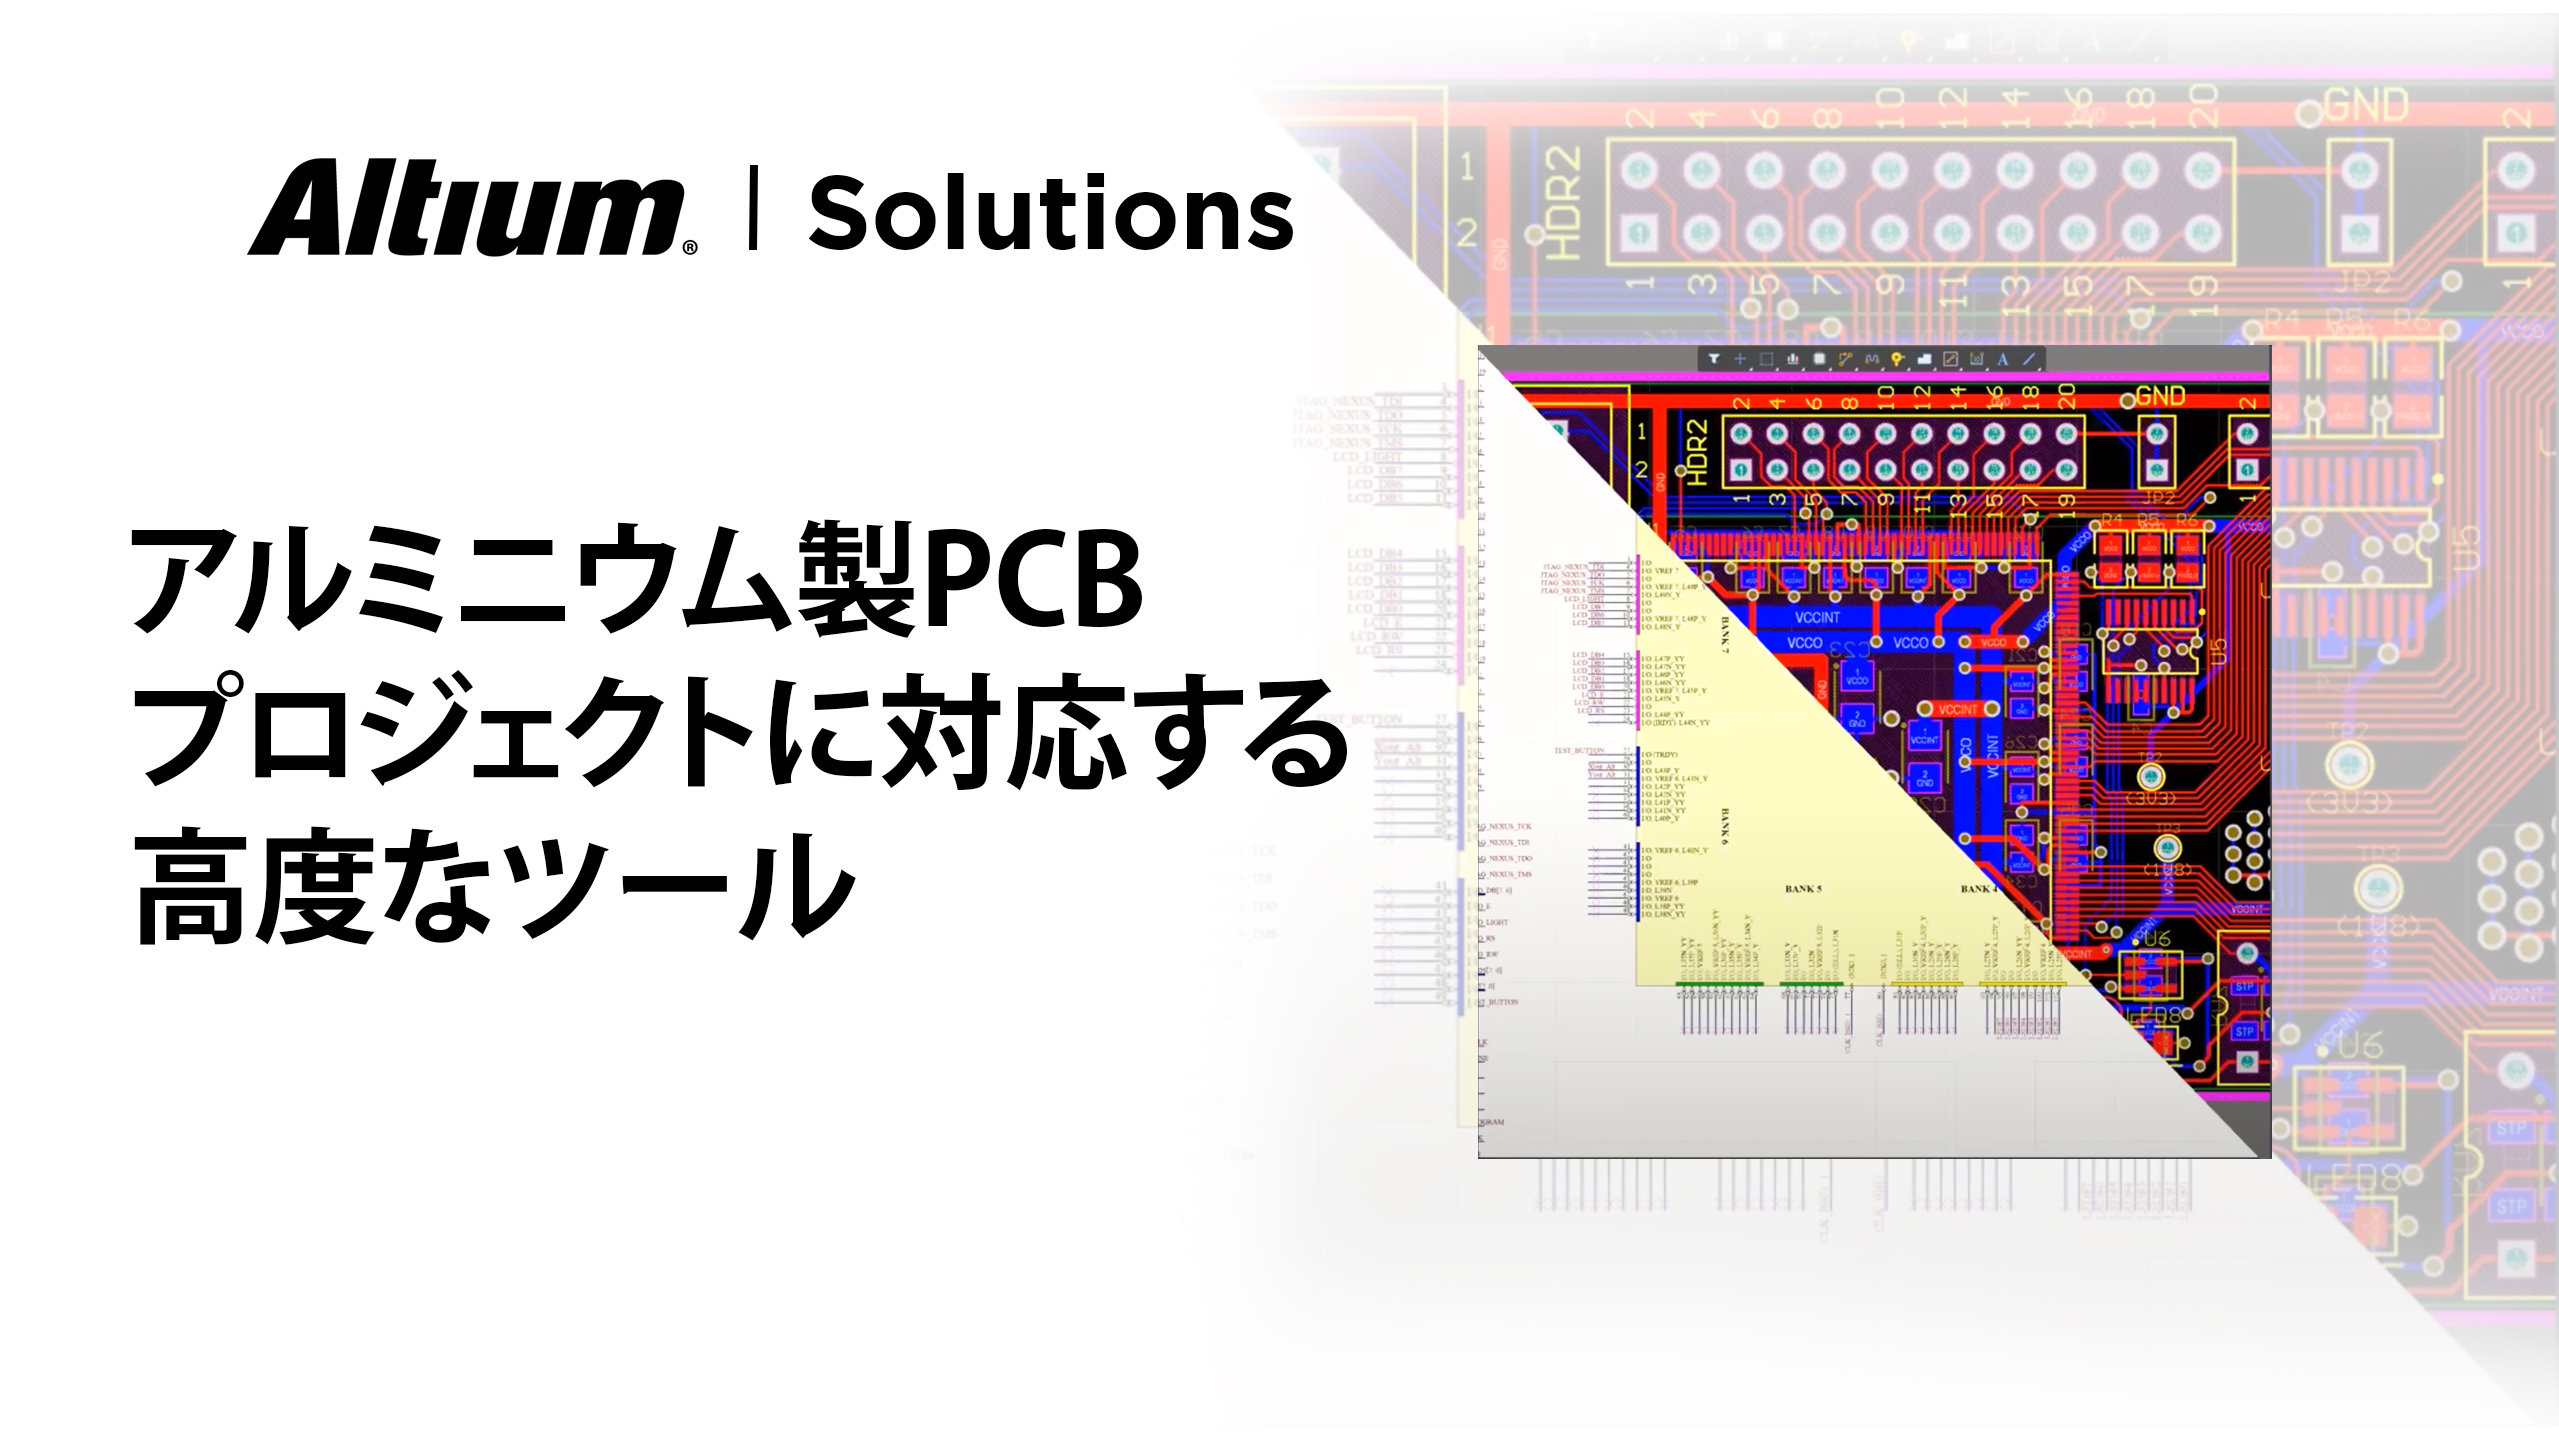 アルミニウム製のPCBに対応する優れたPCB設計ソフトウェア